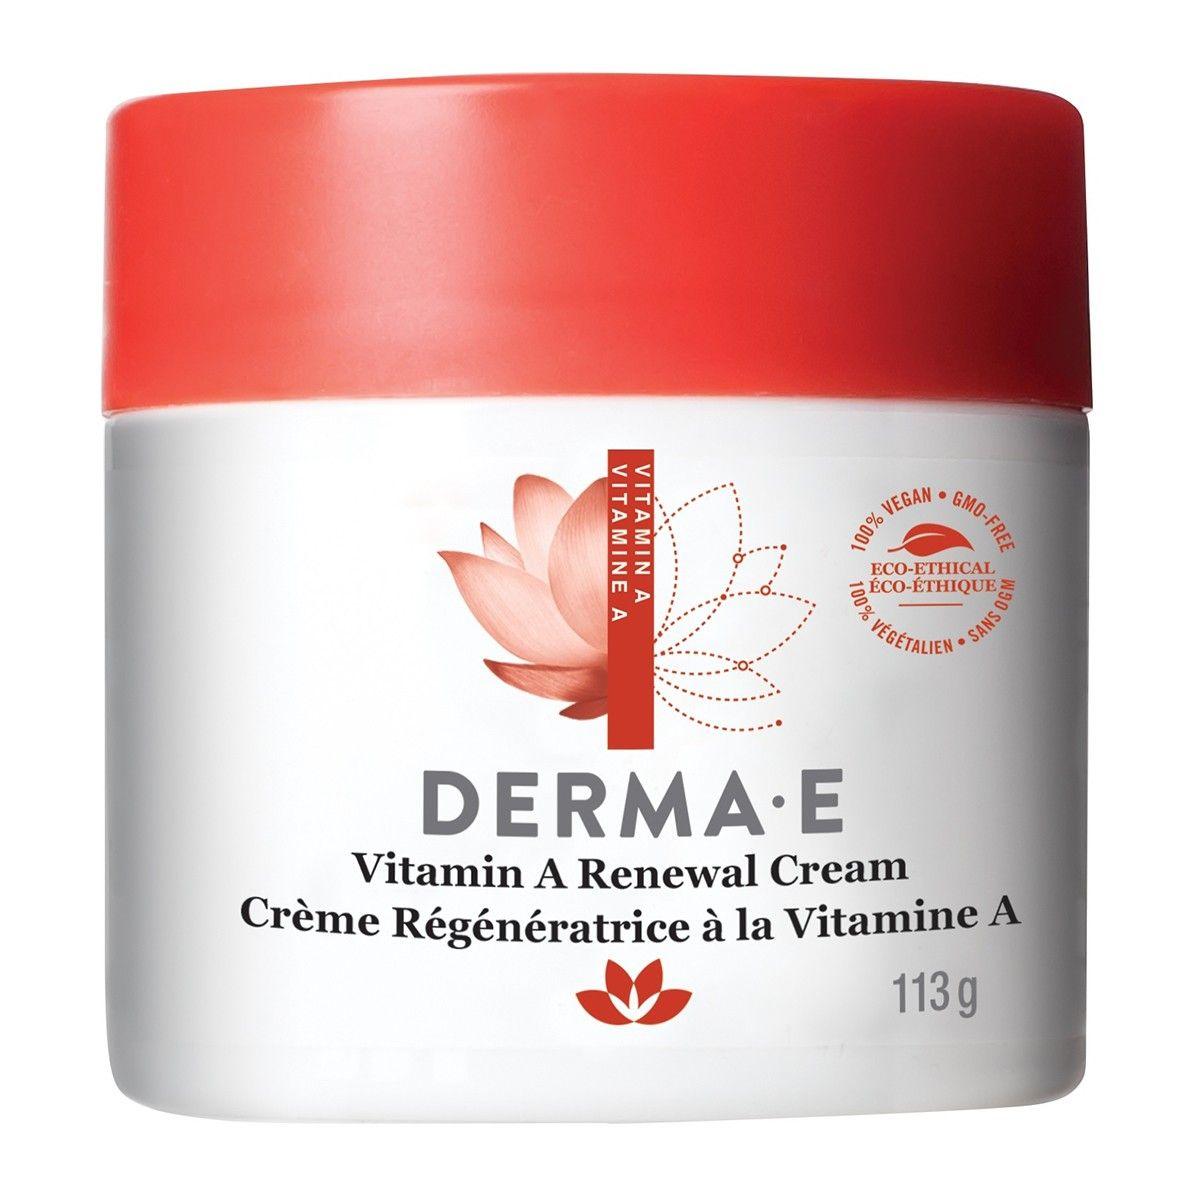 Derma E Vitamin A Renewal Cream 113g Face Moisturizer at Village Vitamin Store